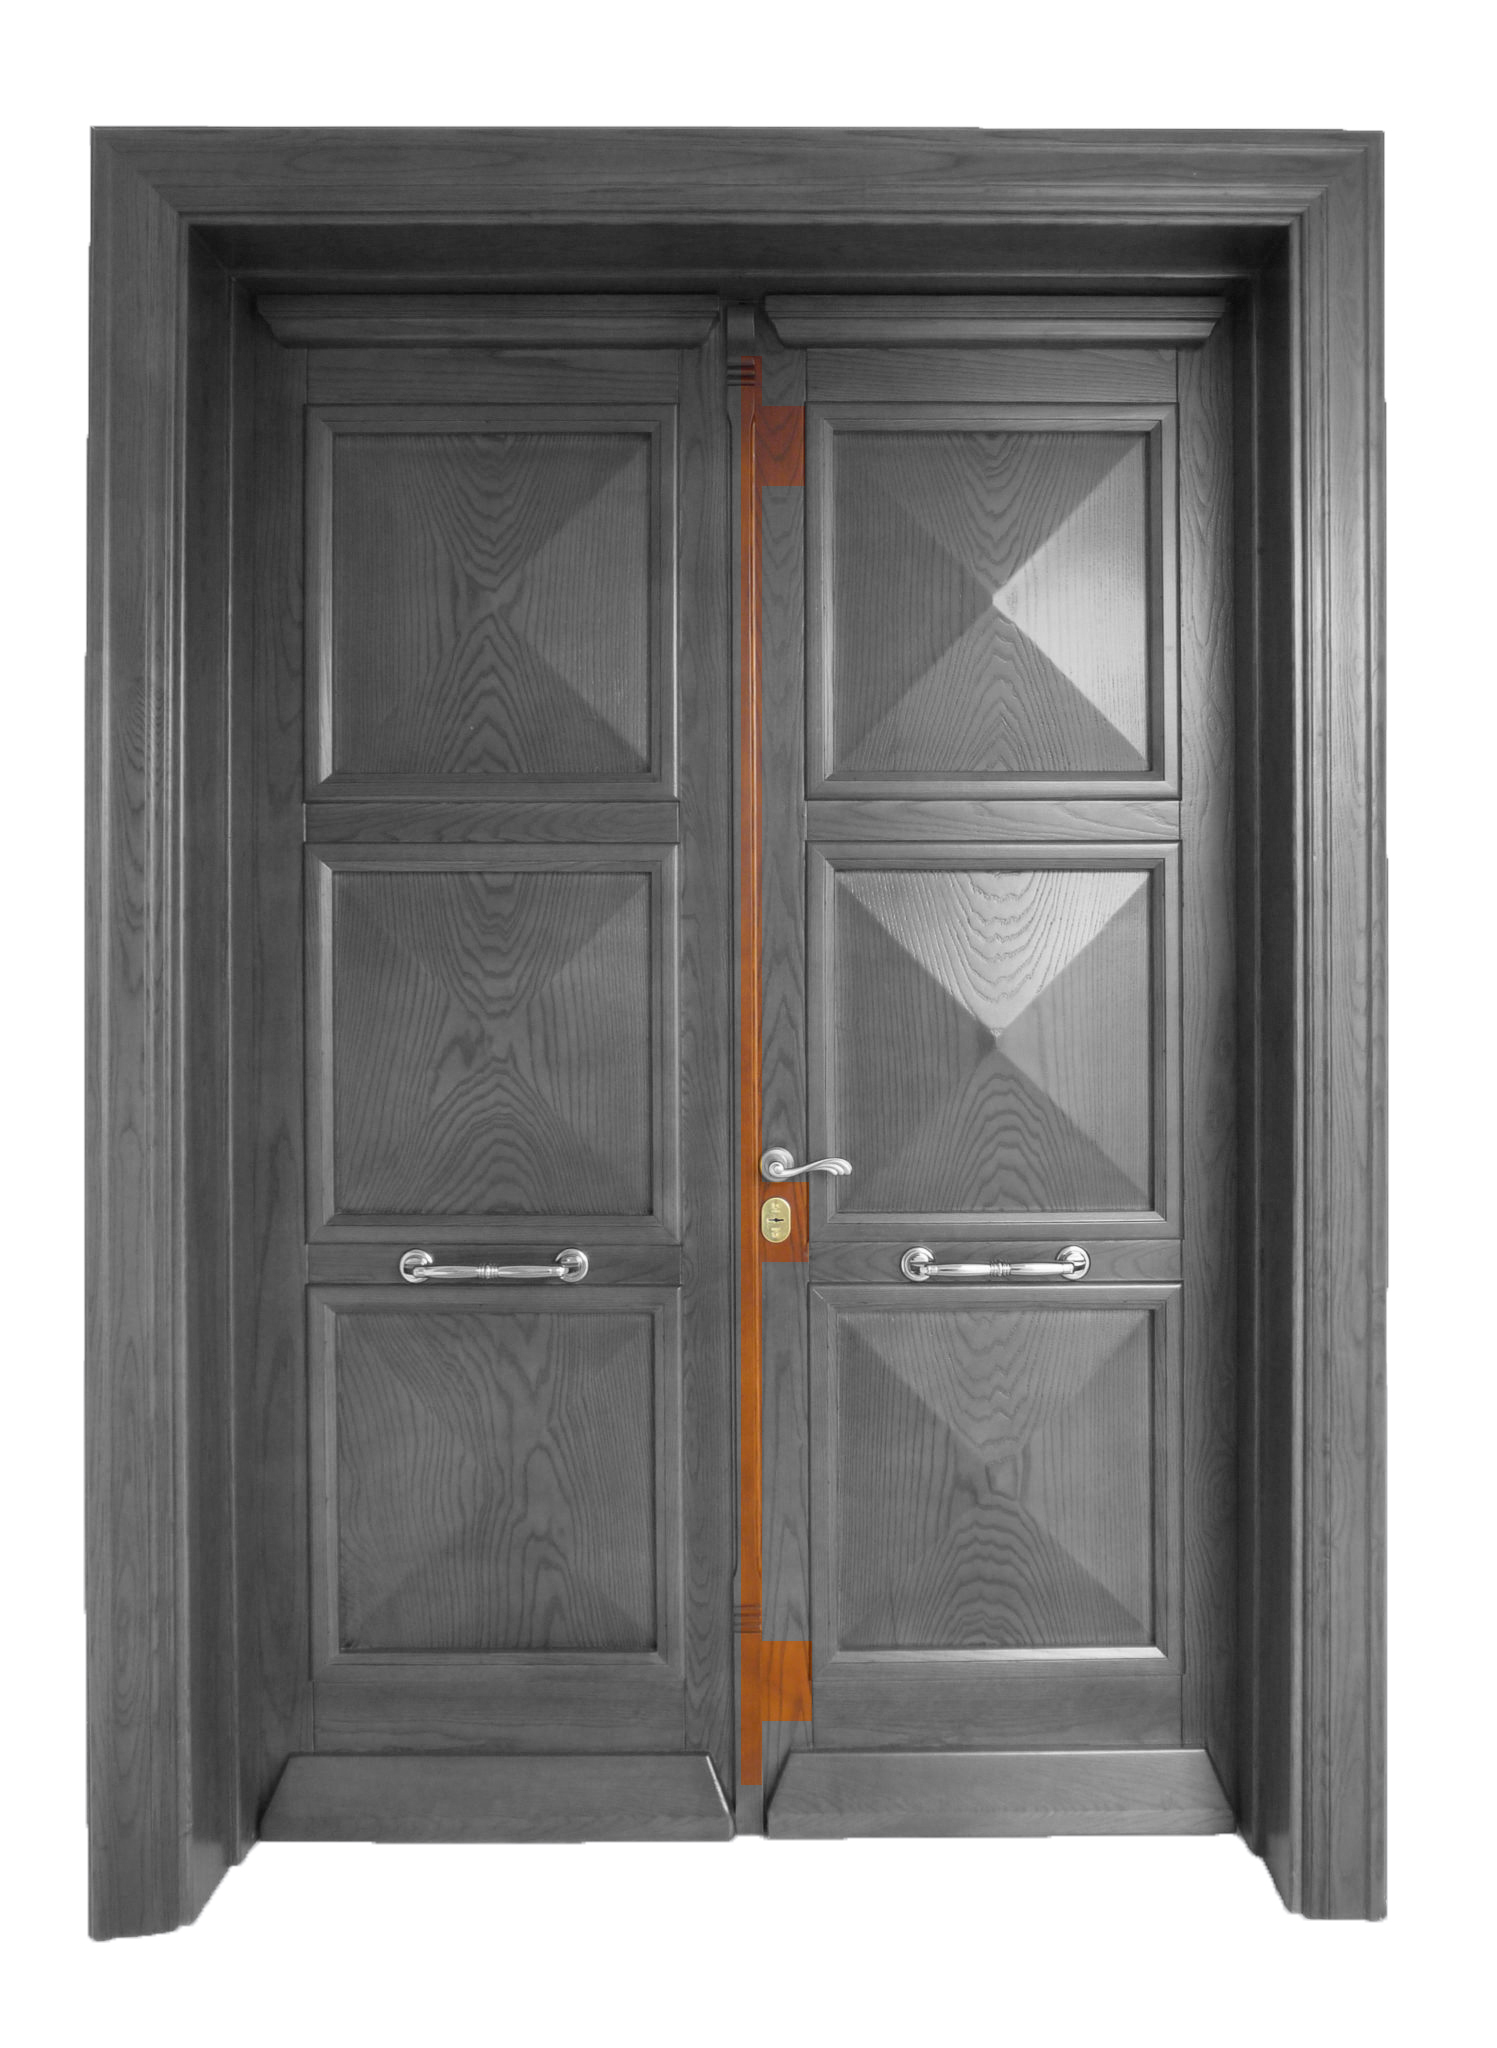 Ξύλινα κουφώματα - Κλειδαριές ασφαλείας σε ξύλινη πόρτα